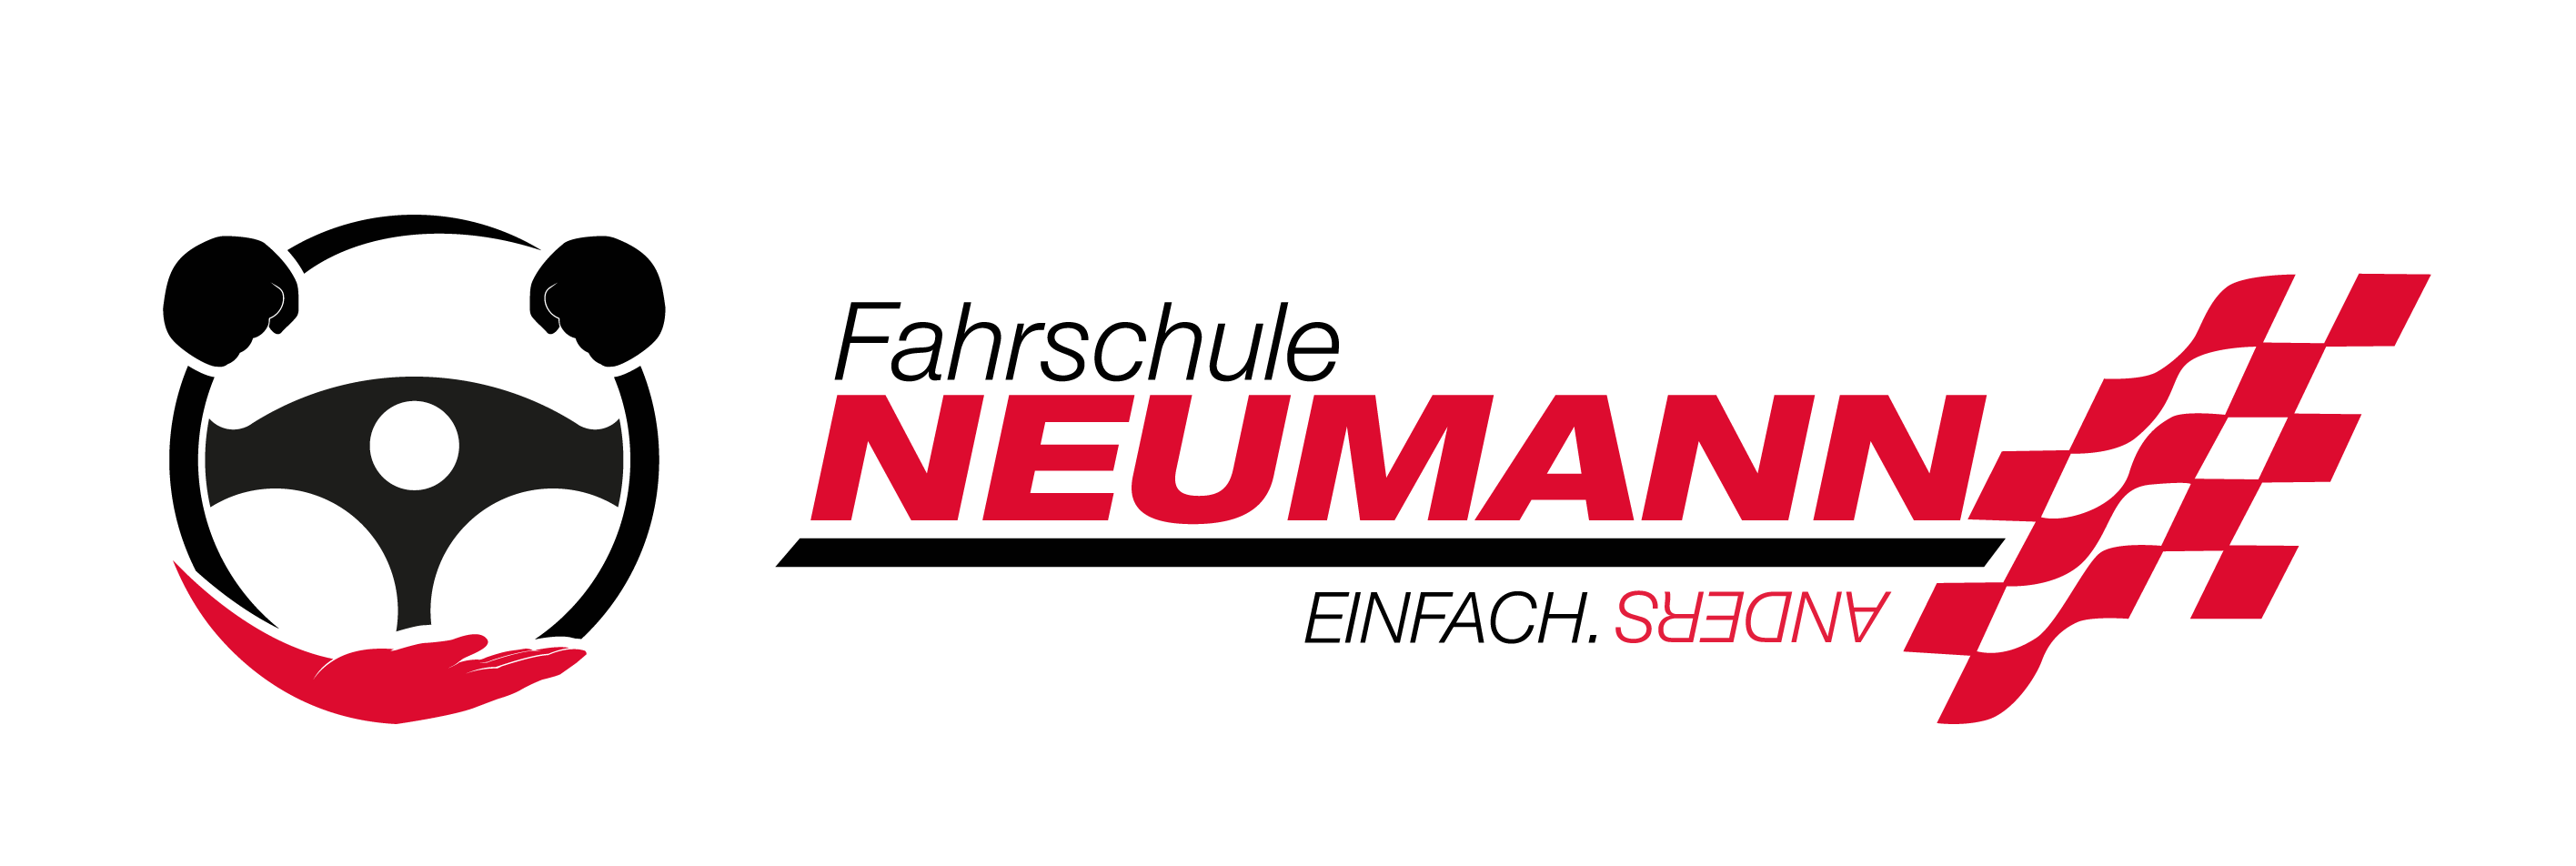 Fahrschule Neumann Logo